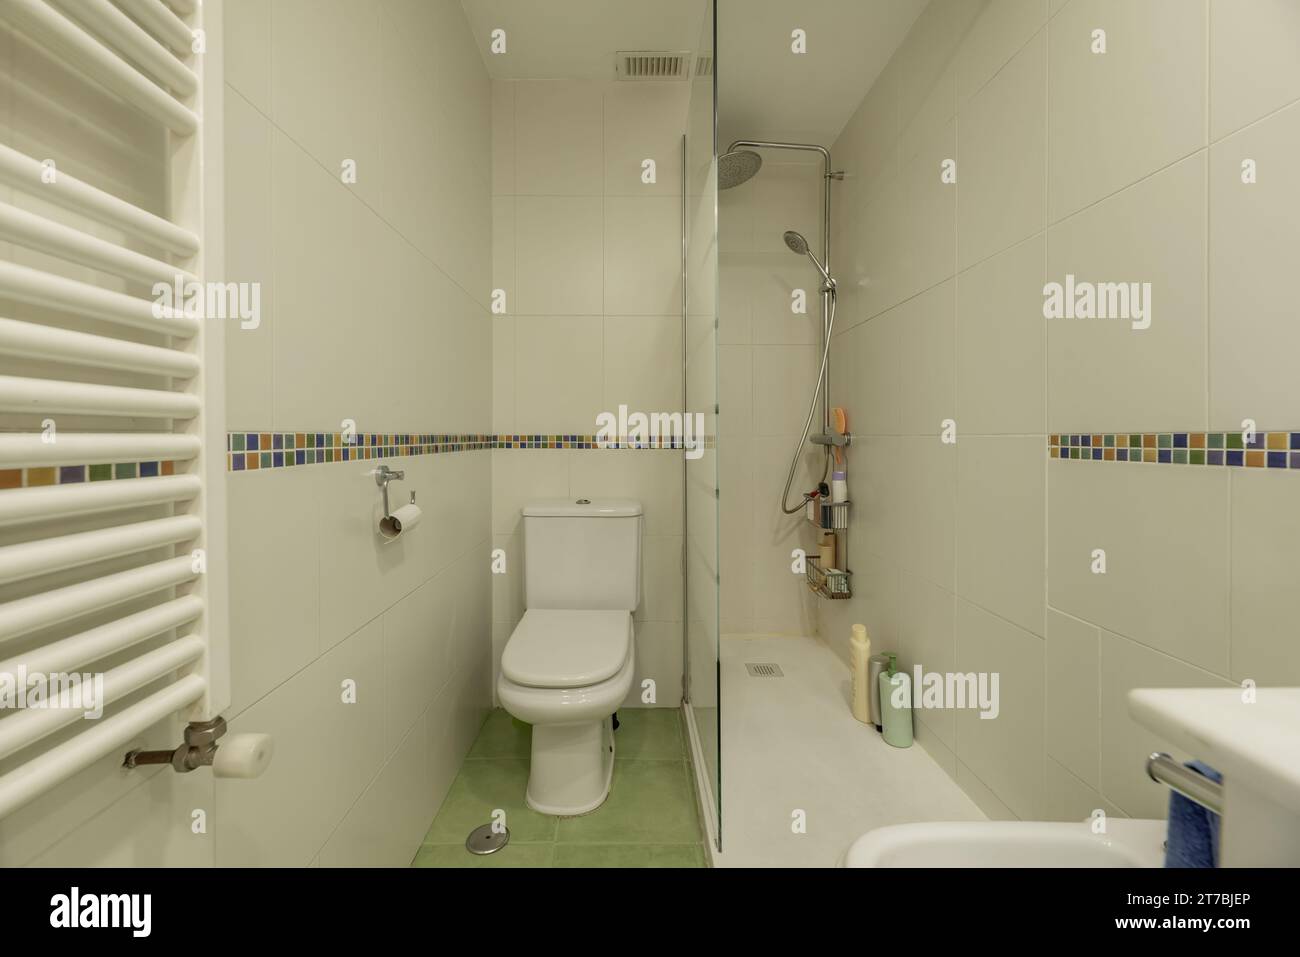 Une petite salle de bains avec une cabine de douche vitrée, une toilette en porcelaine blanche Banque D'Images